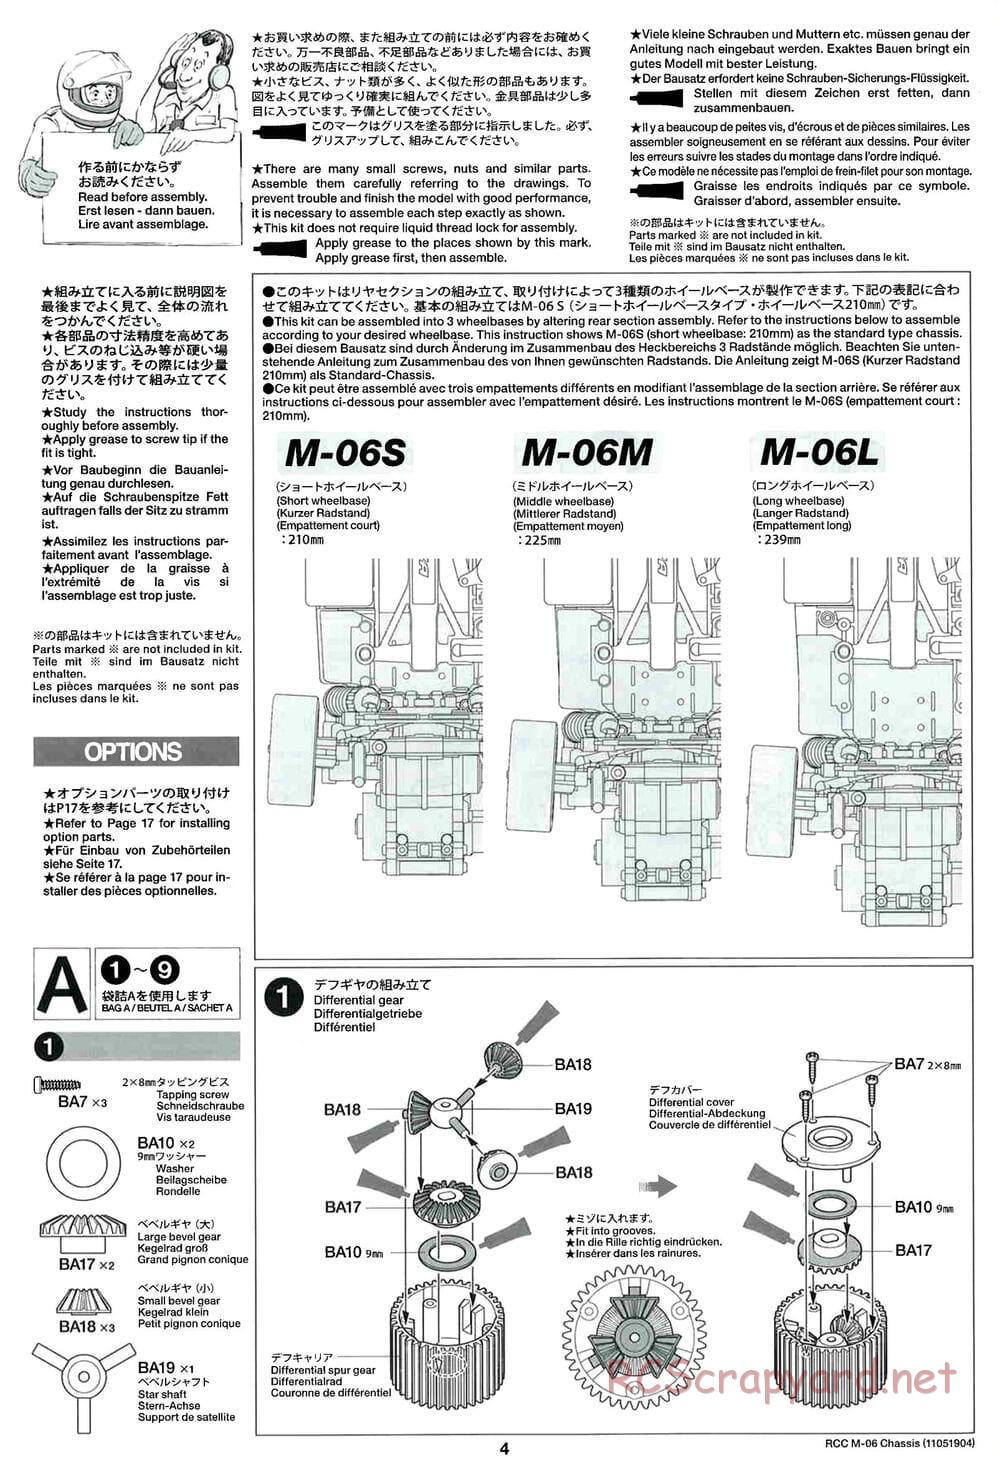 Tamiya - M-06 Chassis - Manual - Page 4